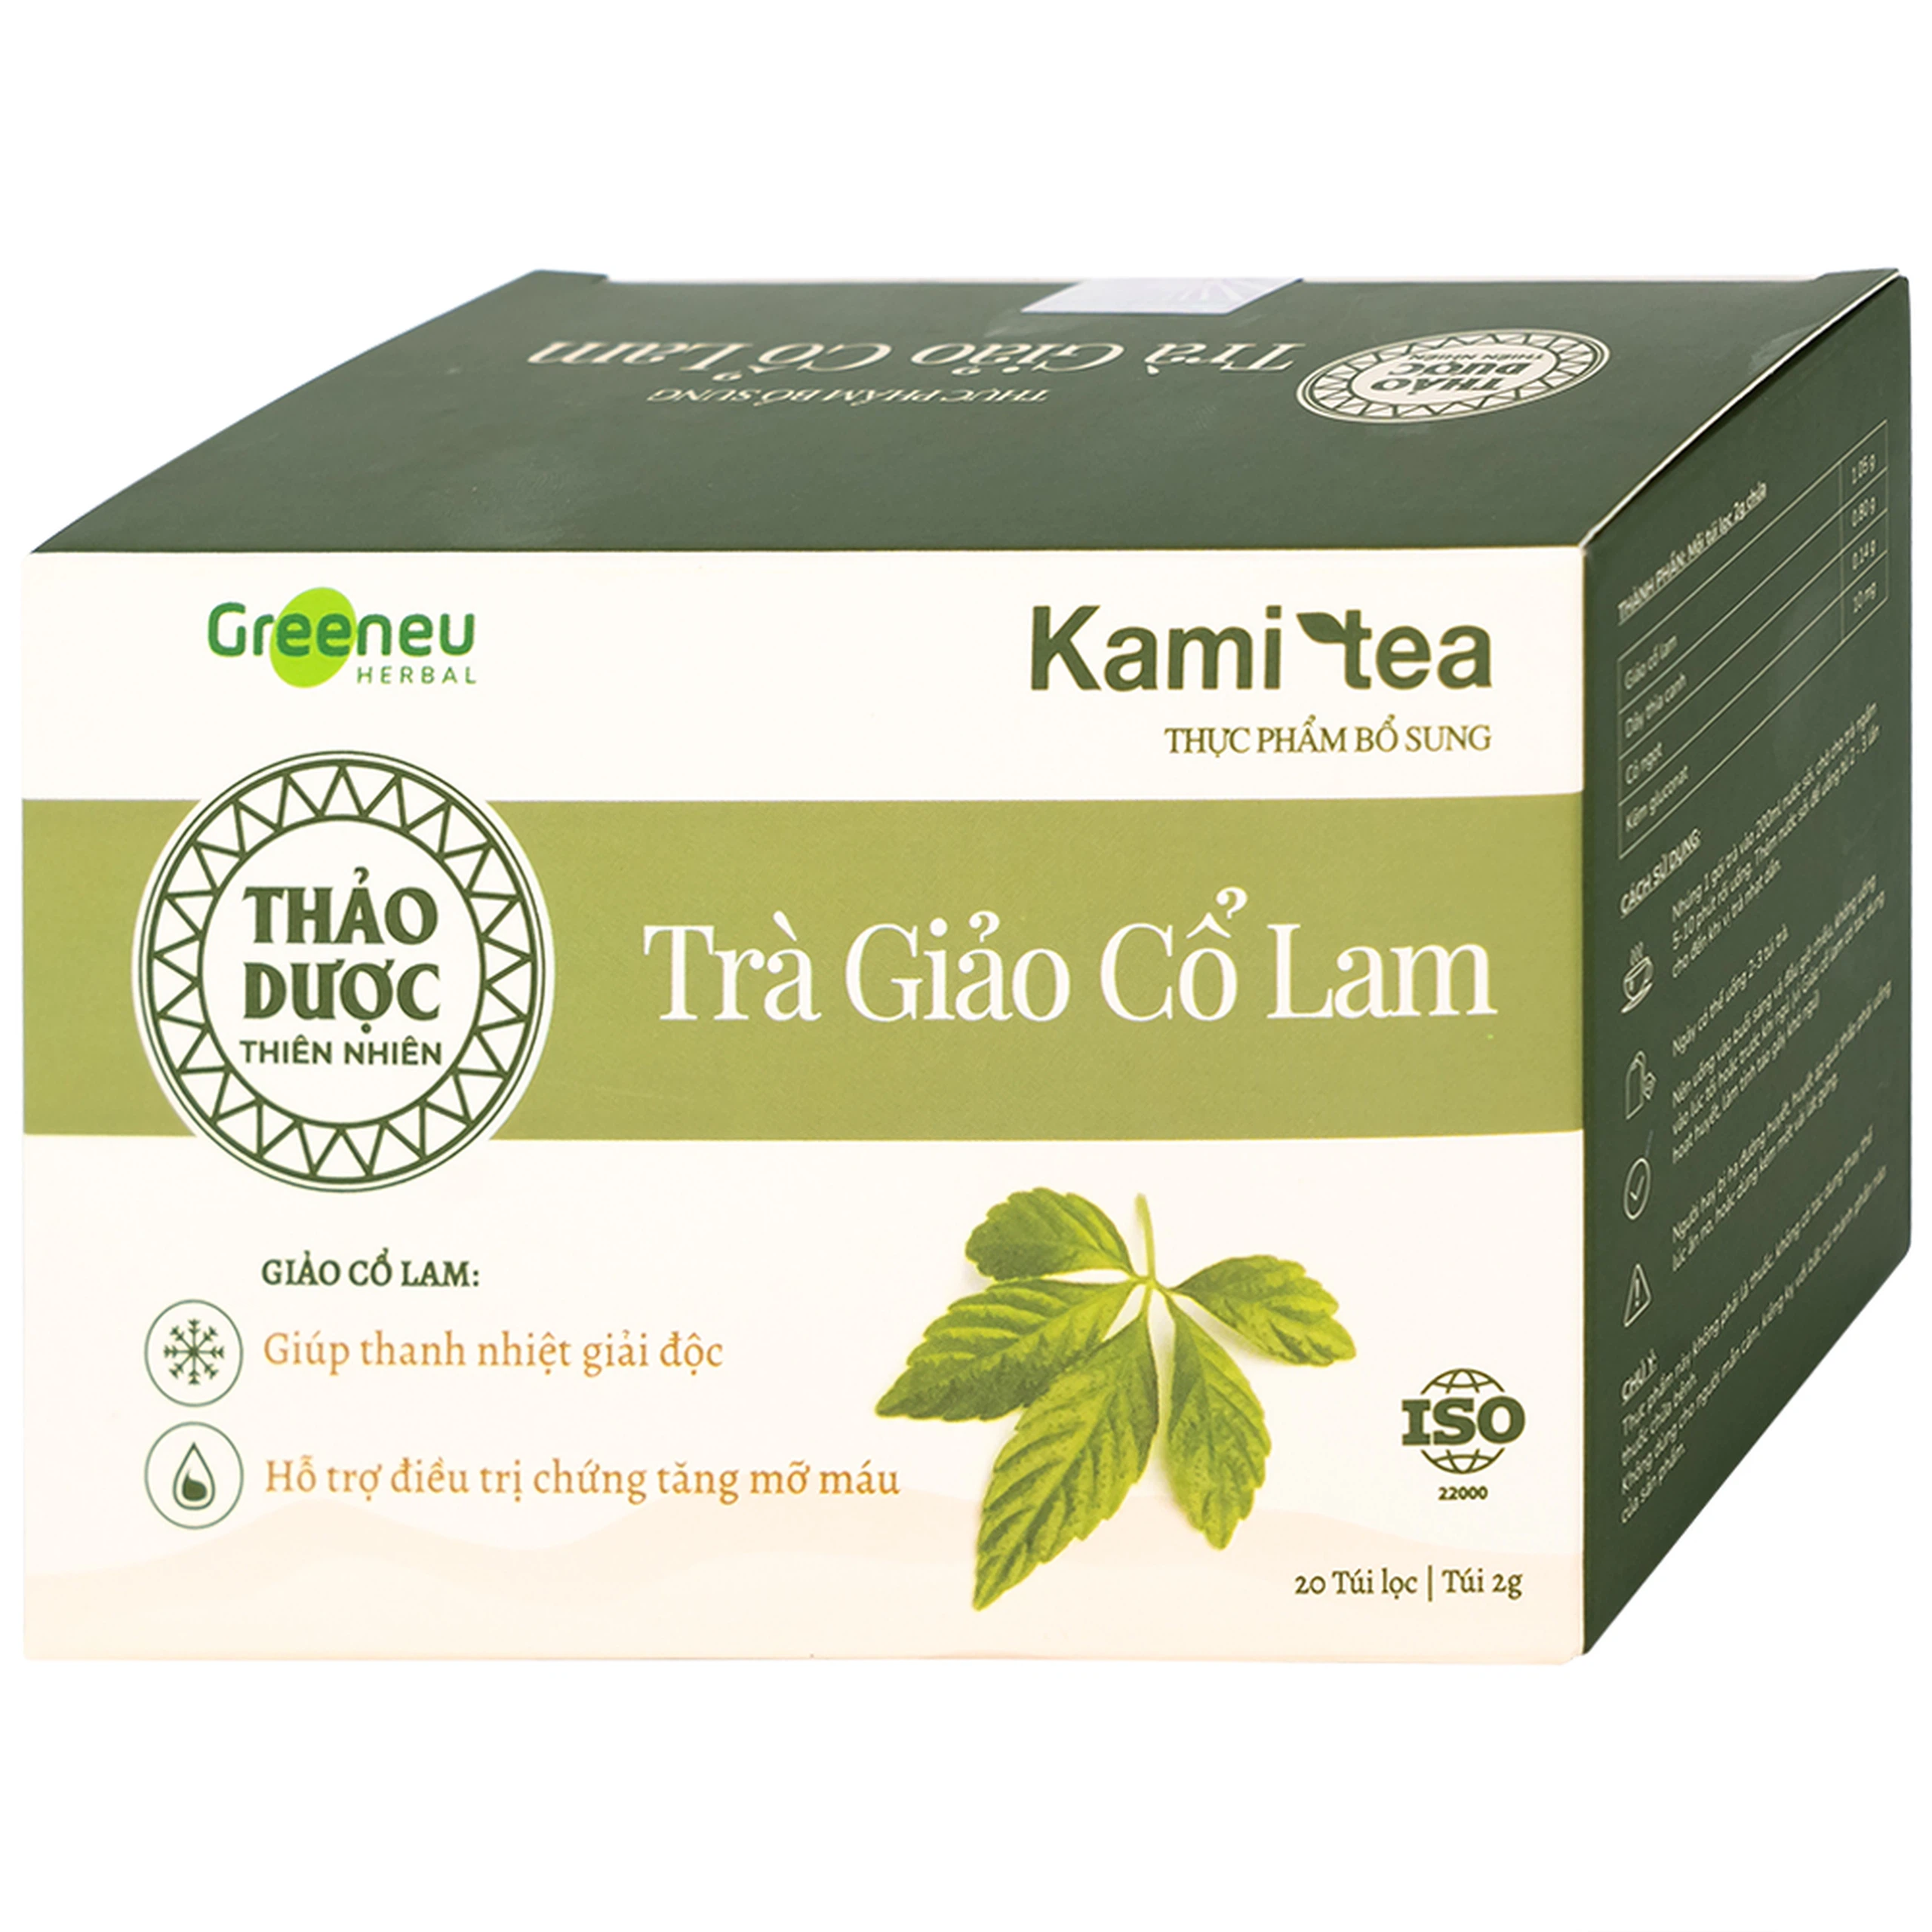 Trà Giảo Cổ Lam Kami tea giúp thanh nhiệt giải độc, hỗ trợ điều trị chứng tăng mỡ máu (20 túi)